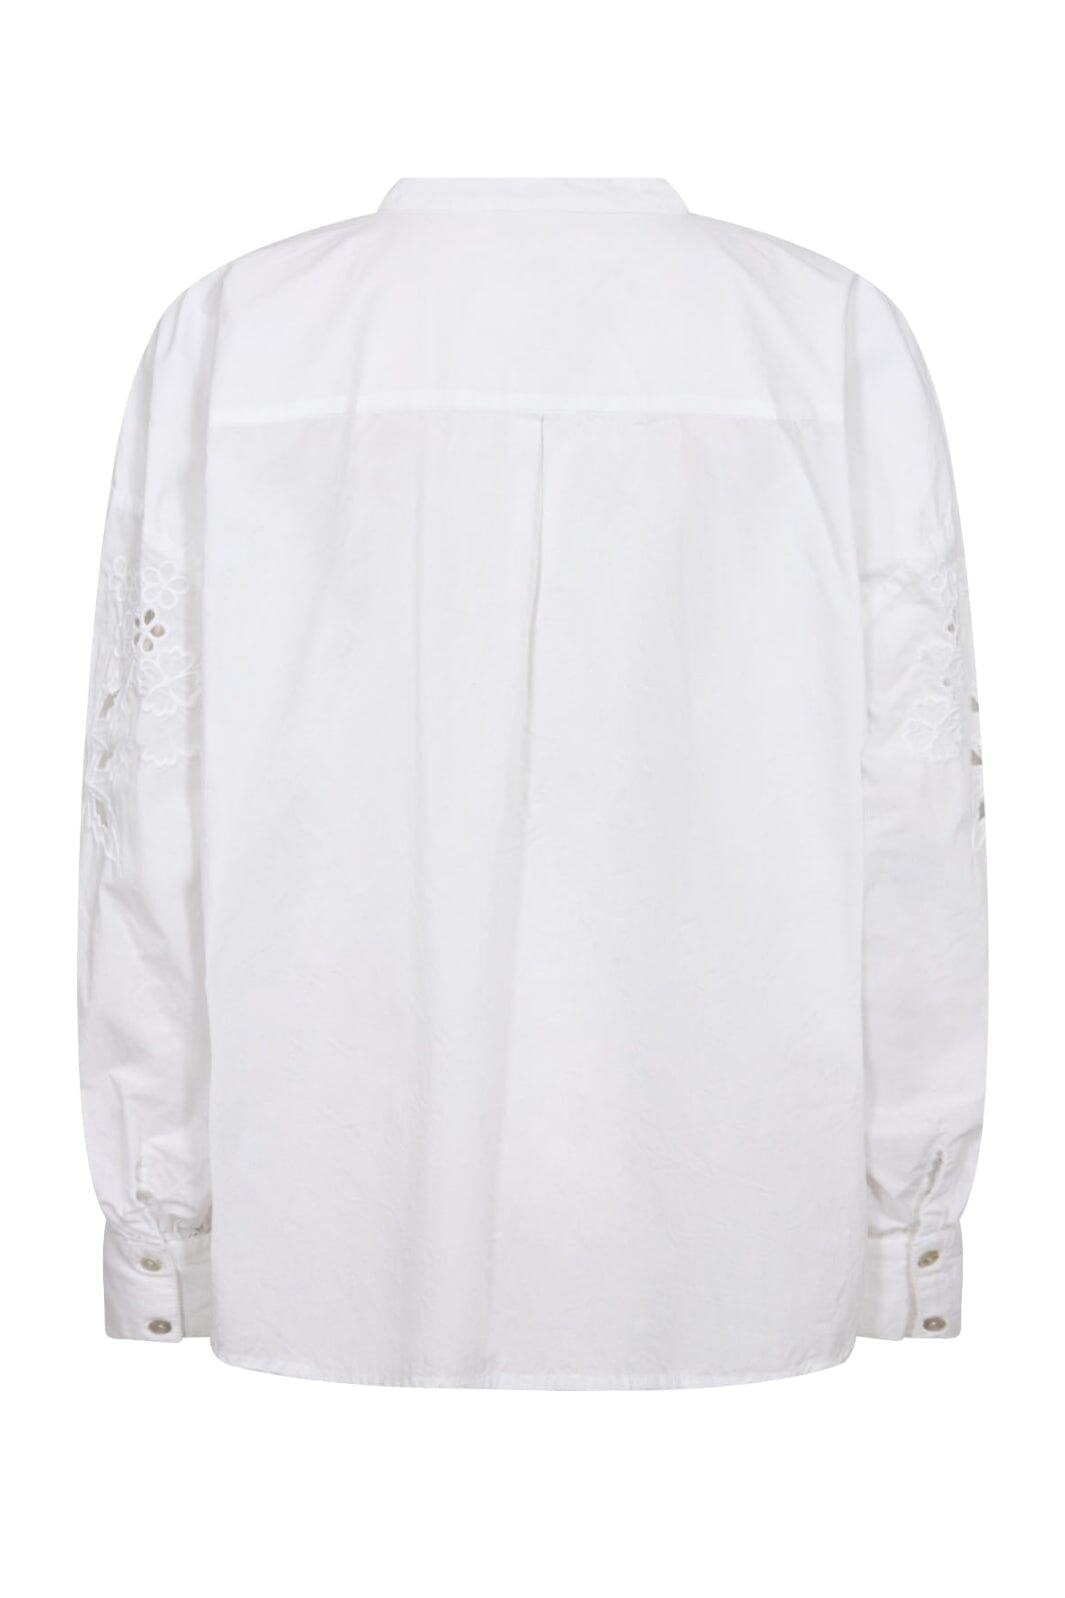 Gossia - VildaGO Shirt - White Skjorter 